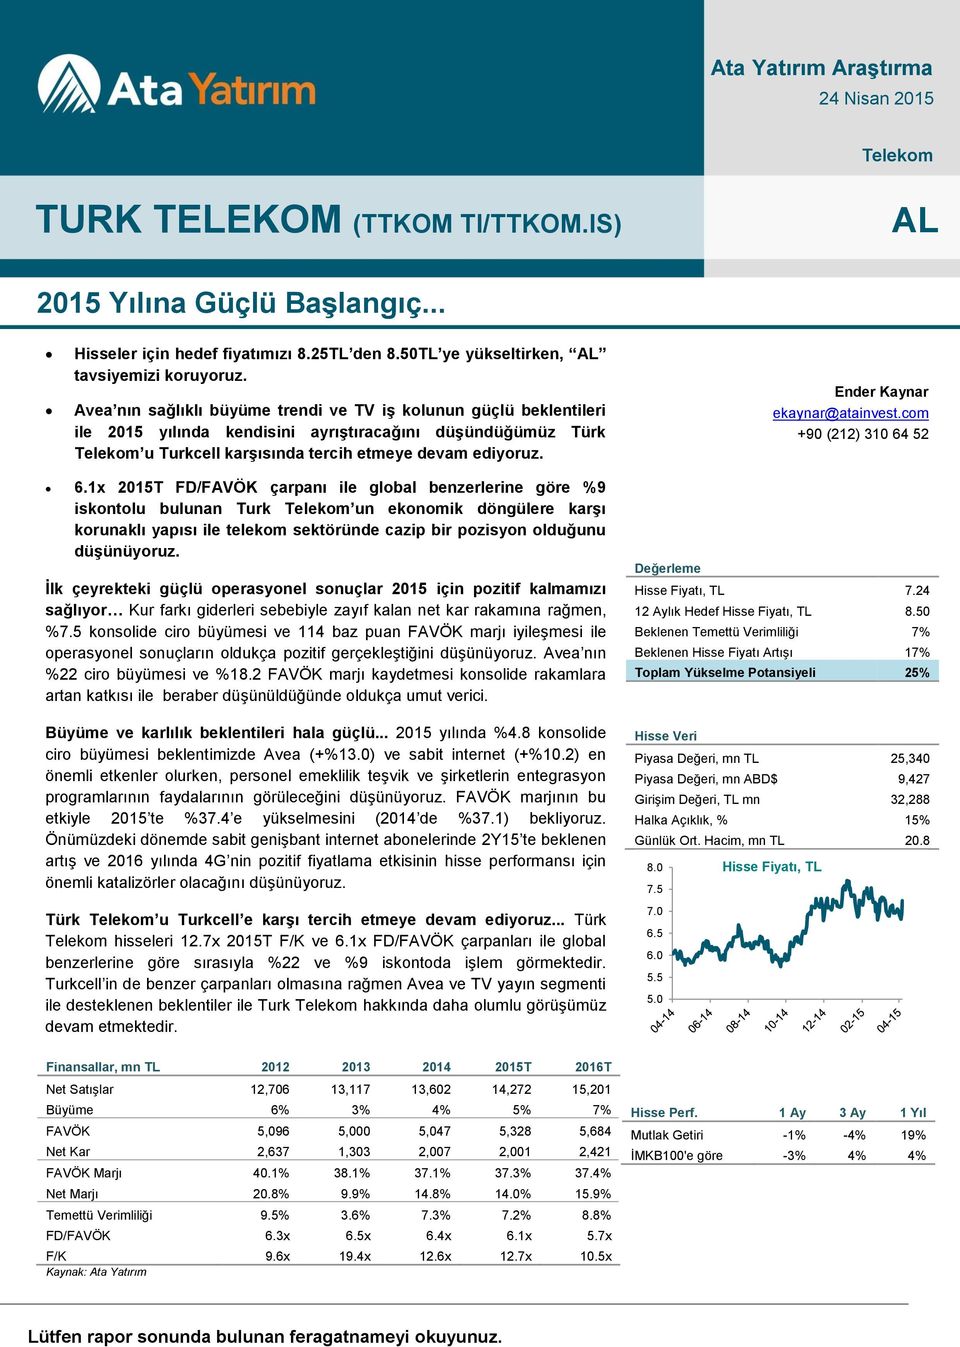 Avea nın sağlıklı büyüme trendi ve TV iş kolunun güçlü beklentileri ile 2015 yılında kendisini ayrıştıracağını düşündüğümüz Türk Telekom u Turkcell karşısında tercih etmeye devam ediyoruz.